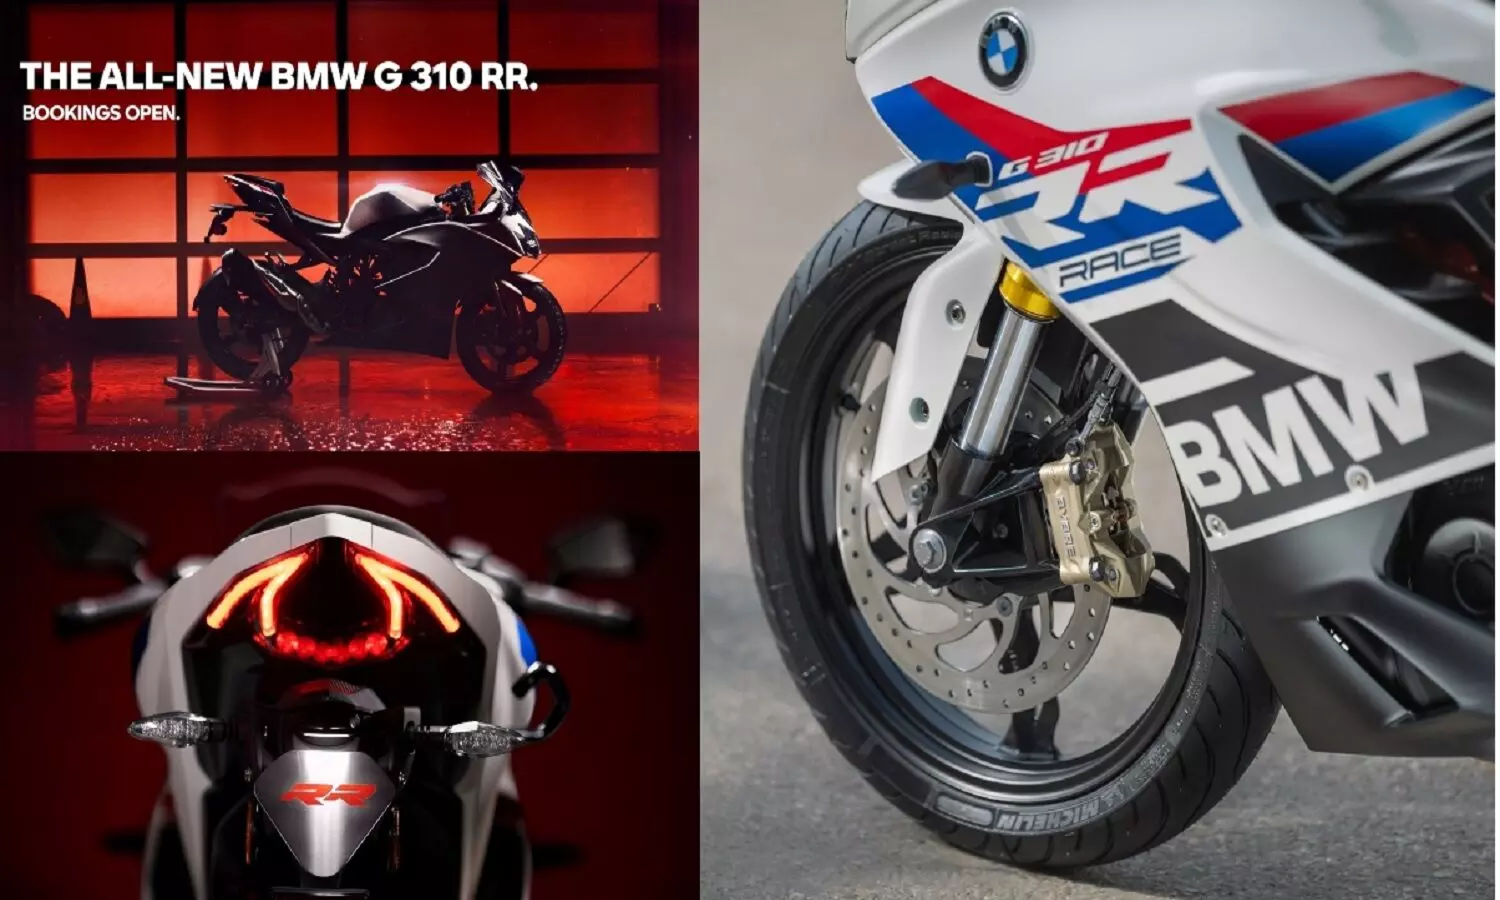 BMW G310 RR Price In India: BMW G310 RR की बुकिंग शुरू जानें इस Superbike की खासियत